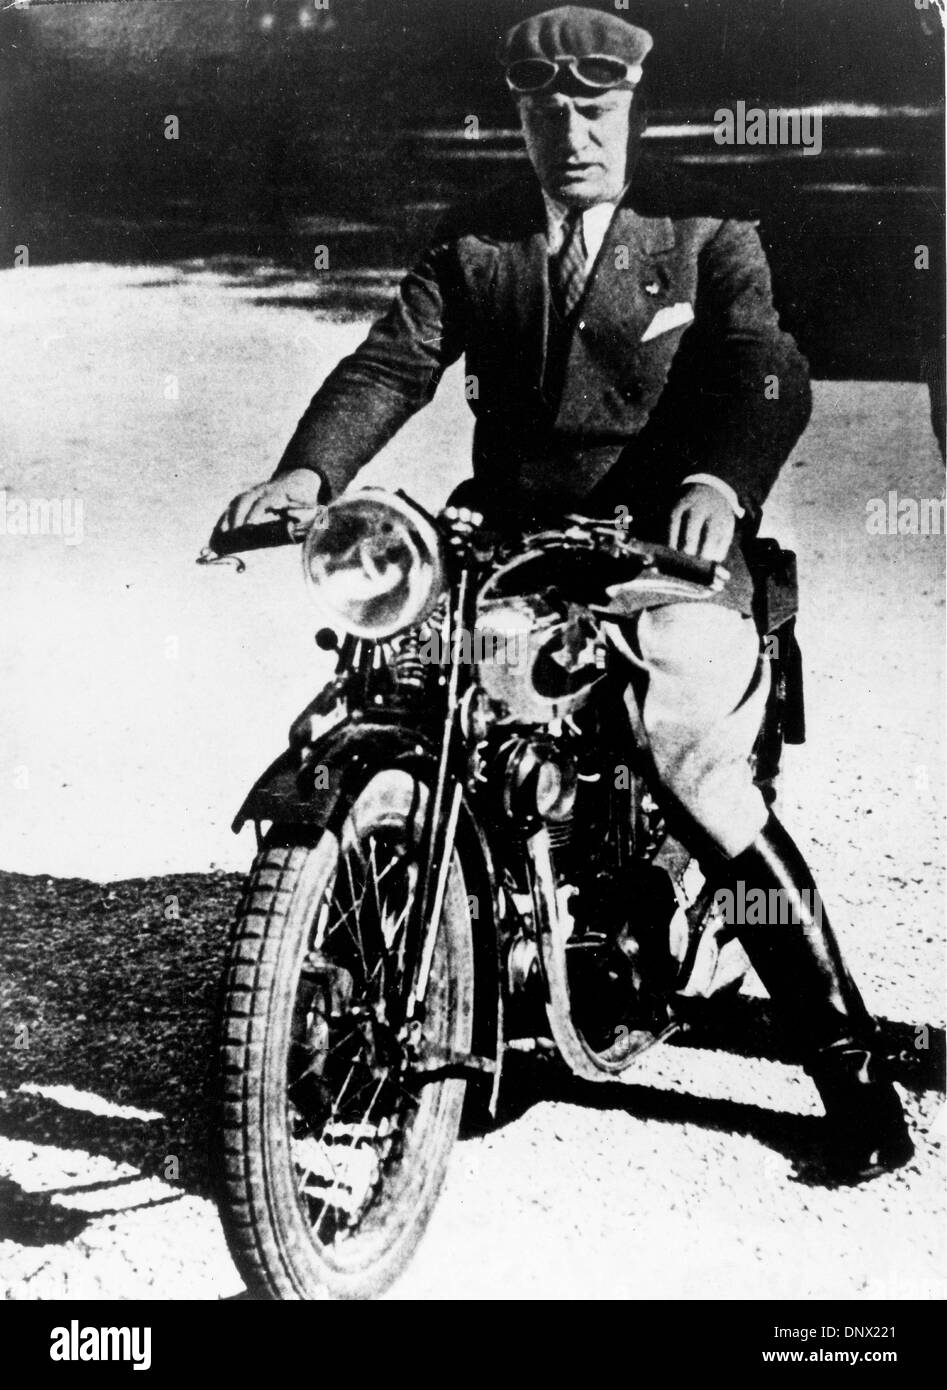 8 mars, 1939 - Rome, Italie - Benito Mussolini (1883-1945) le dictateur italien et leader du mouvement fasciste assis sur sa moto. (Crédit Image : © Keystone Photos USA/ZUMAPRESS.com) Banque D'Images